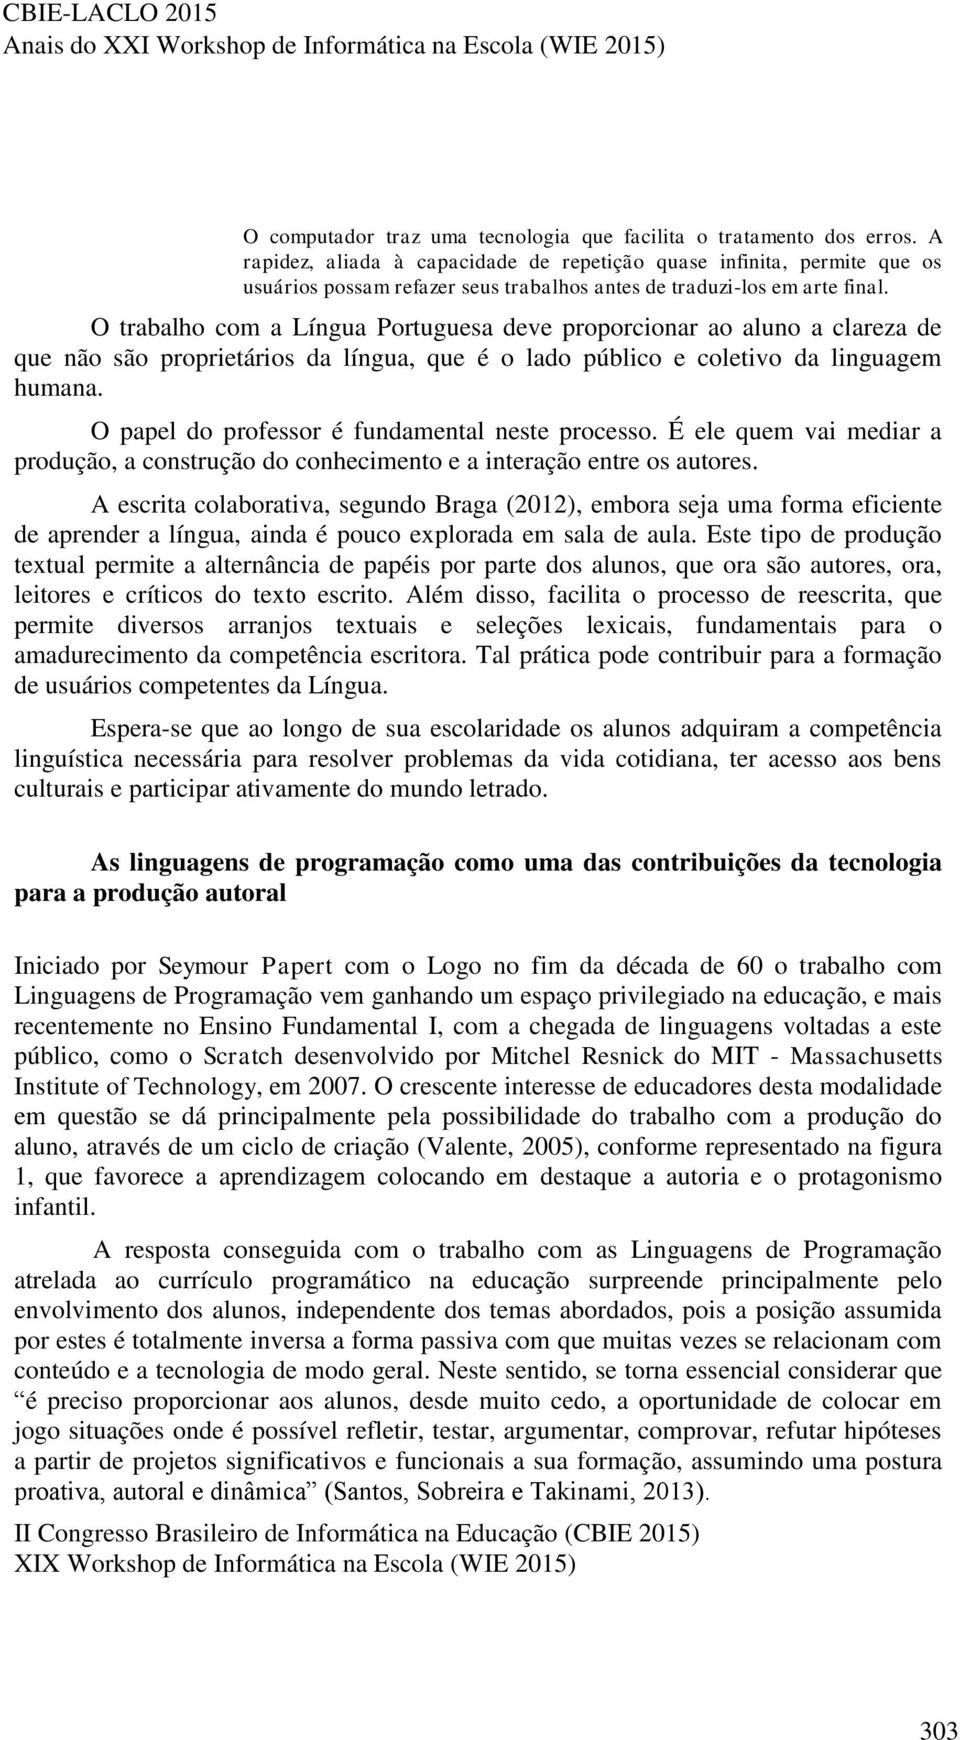 O trabalho com a Língua Portuguesa deve proporcionar ao aluno a clareza de que não são proprietários da língua, que é o lado público e coletivo da linguagem humana.